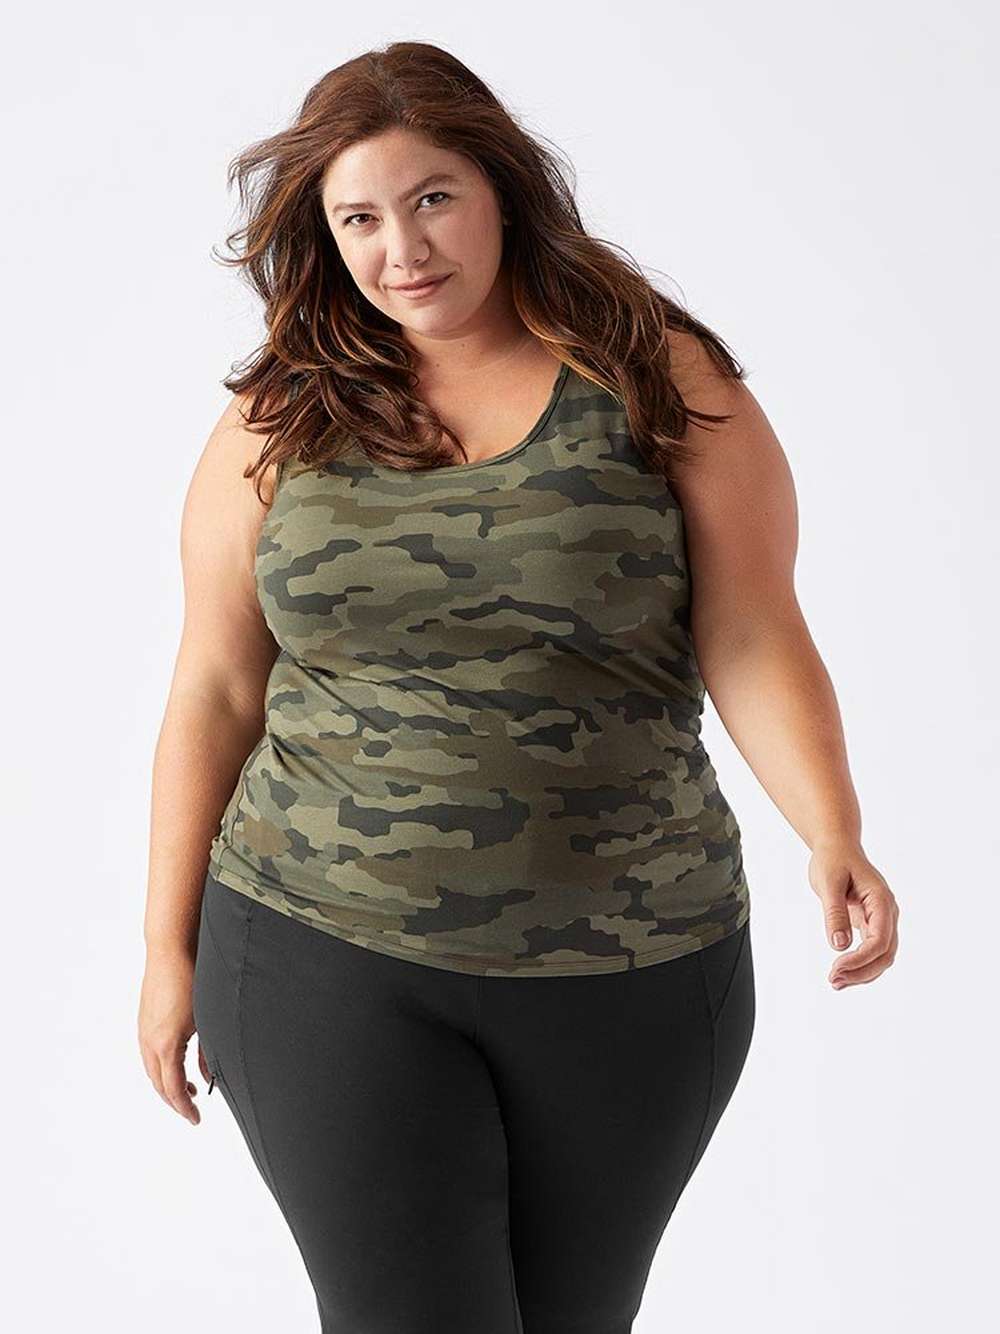 Woman in camo tank top with black leggings